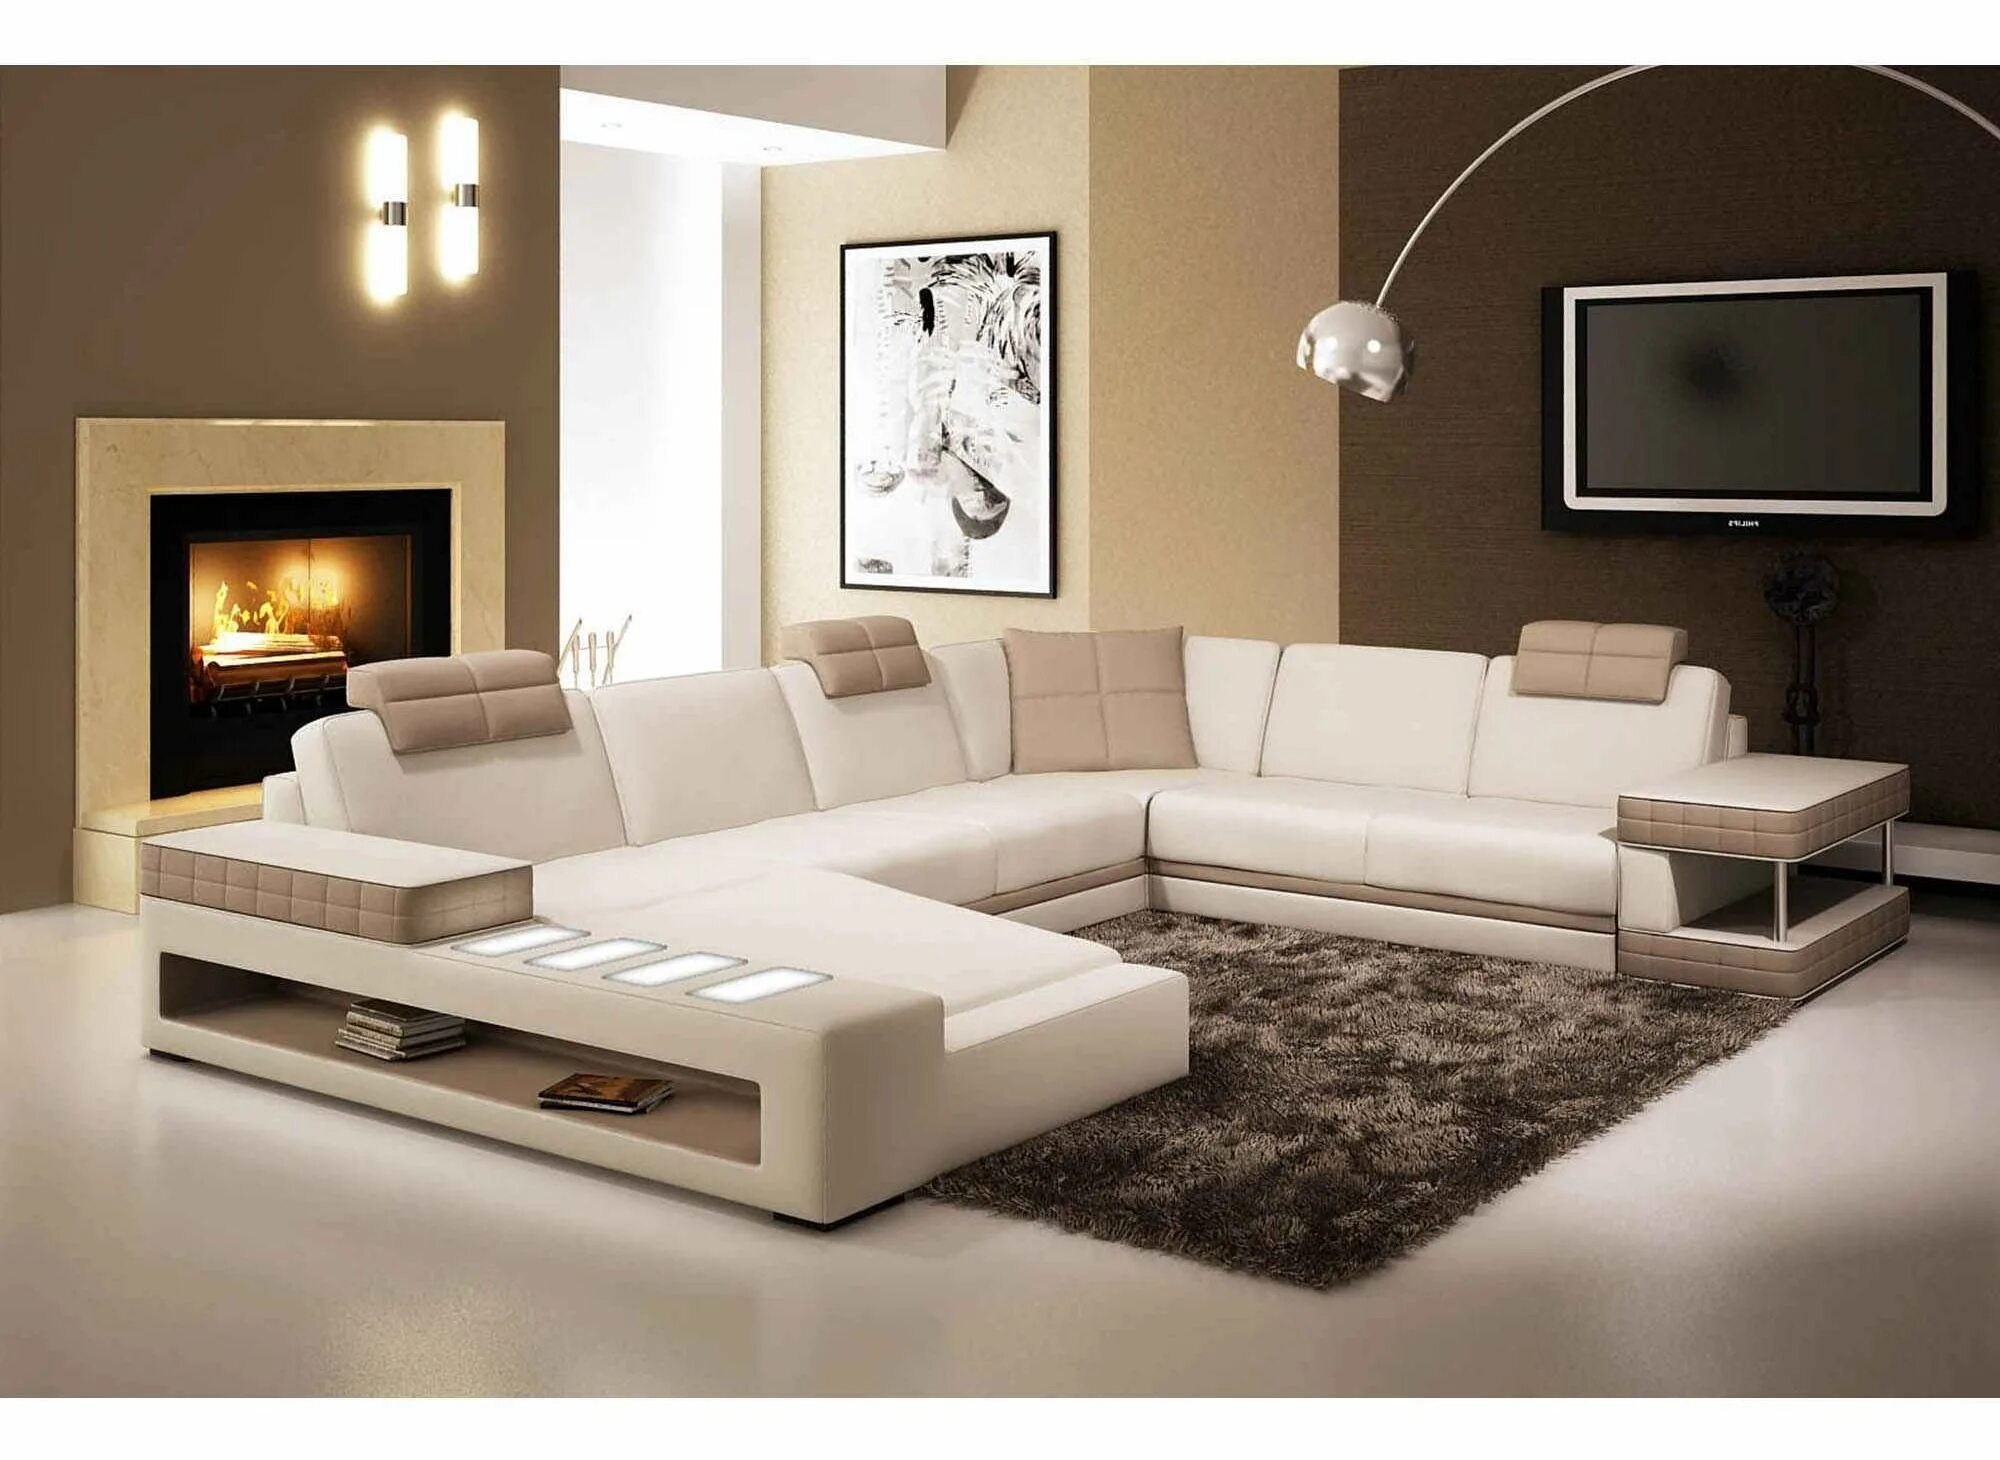 Красивые диваны для гостиной. Современные диваны для гостиной. Угловой диван в интерьере гостиной. Современная мягкая мебель для гостиной.